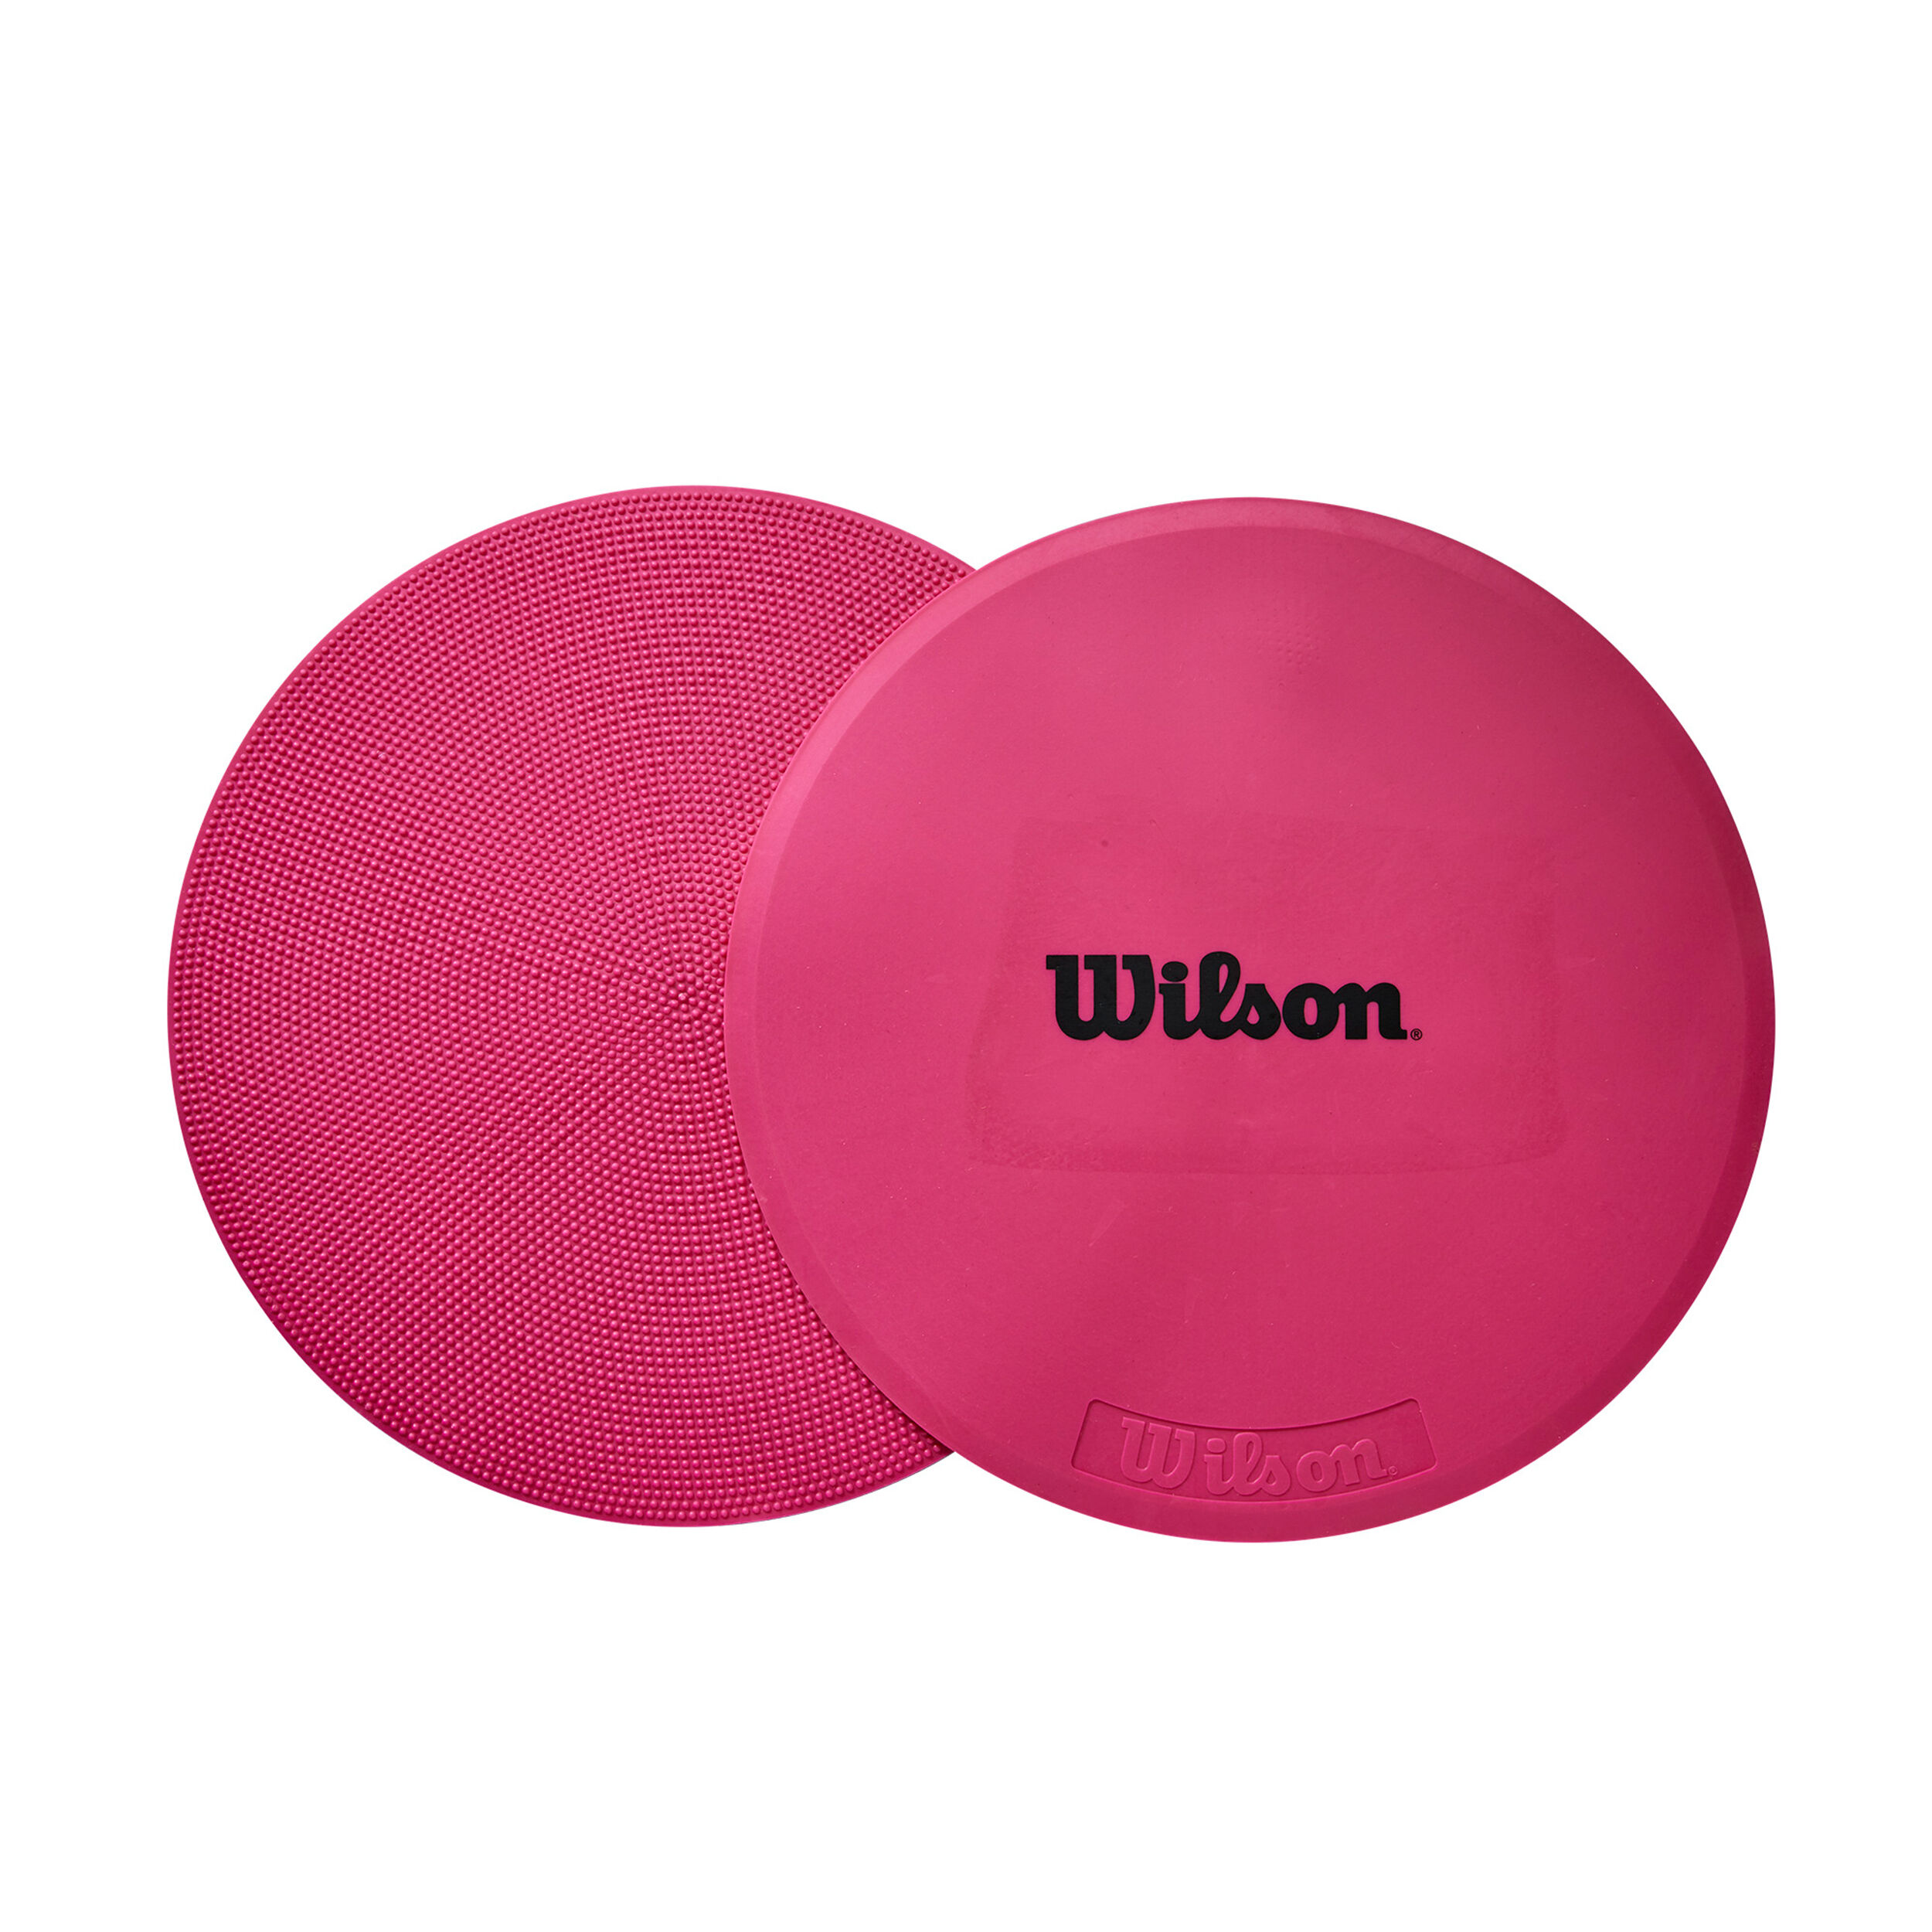 Wilson Markierungshütchen 6 Stück Sortierte Farben Tennis Marker Cones WRZ259400 PVC 